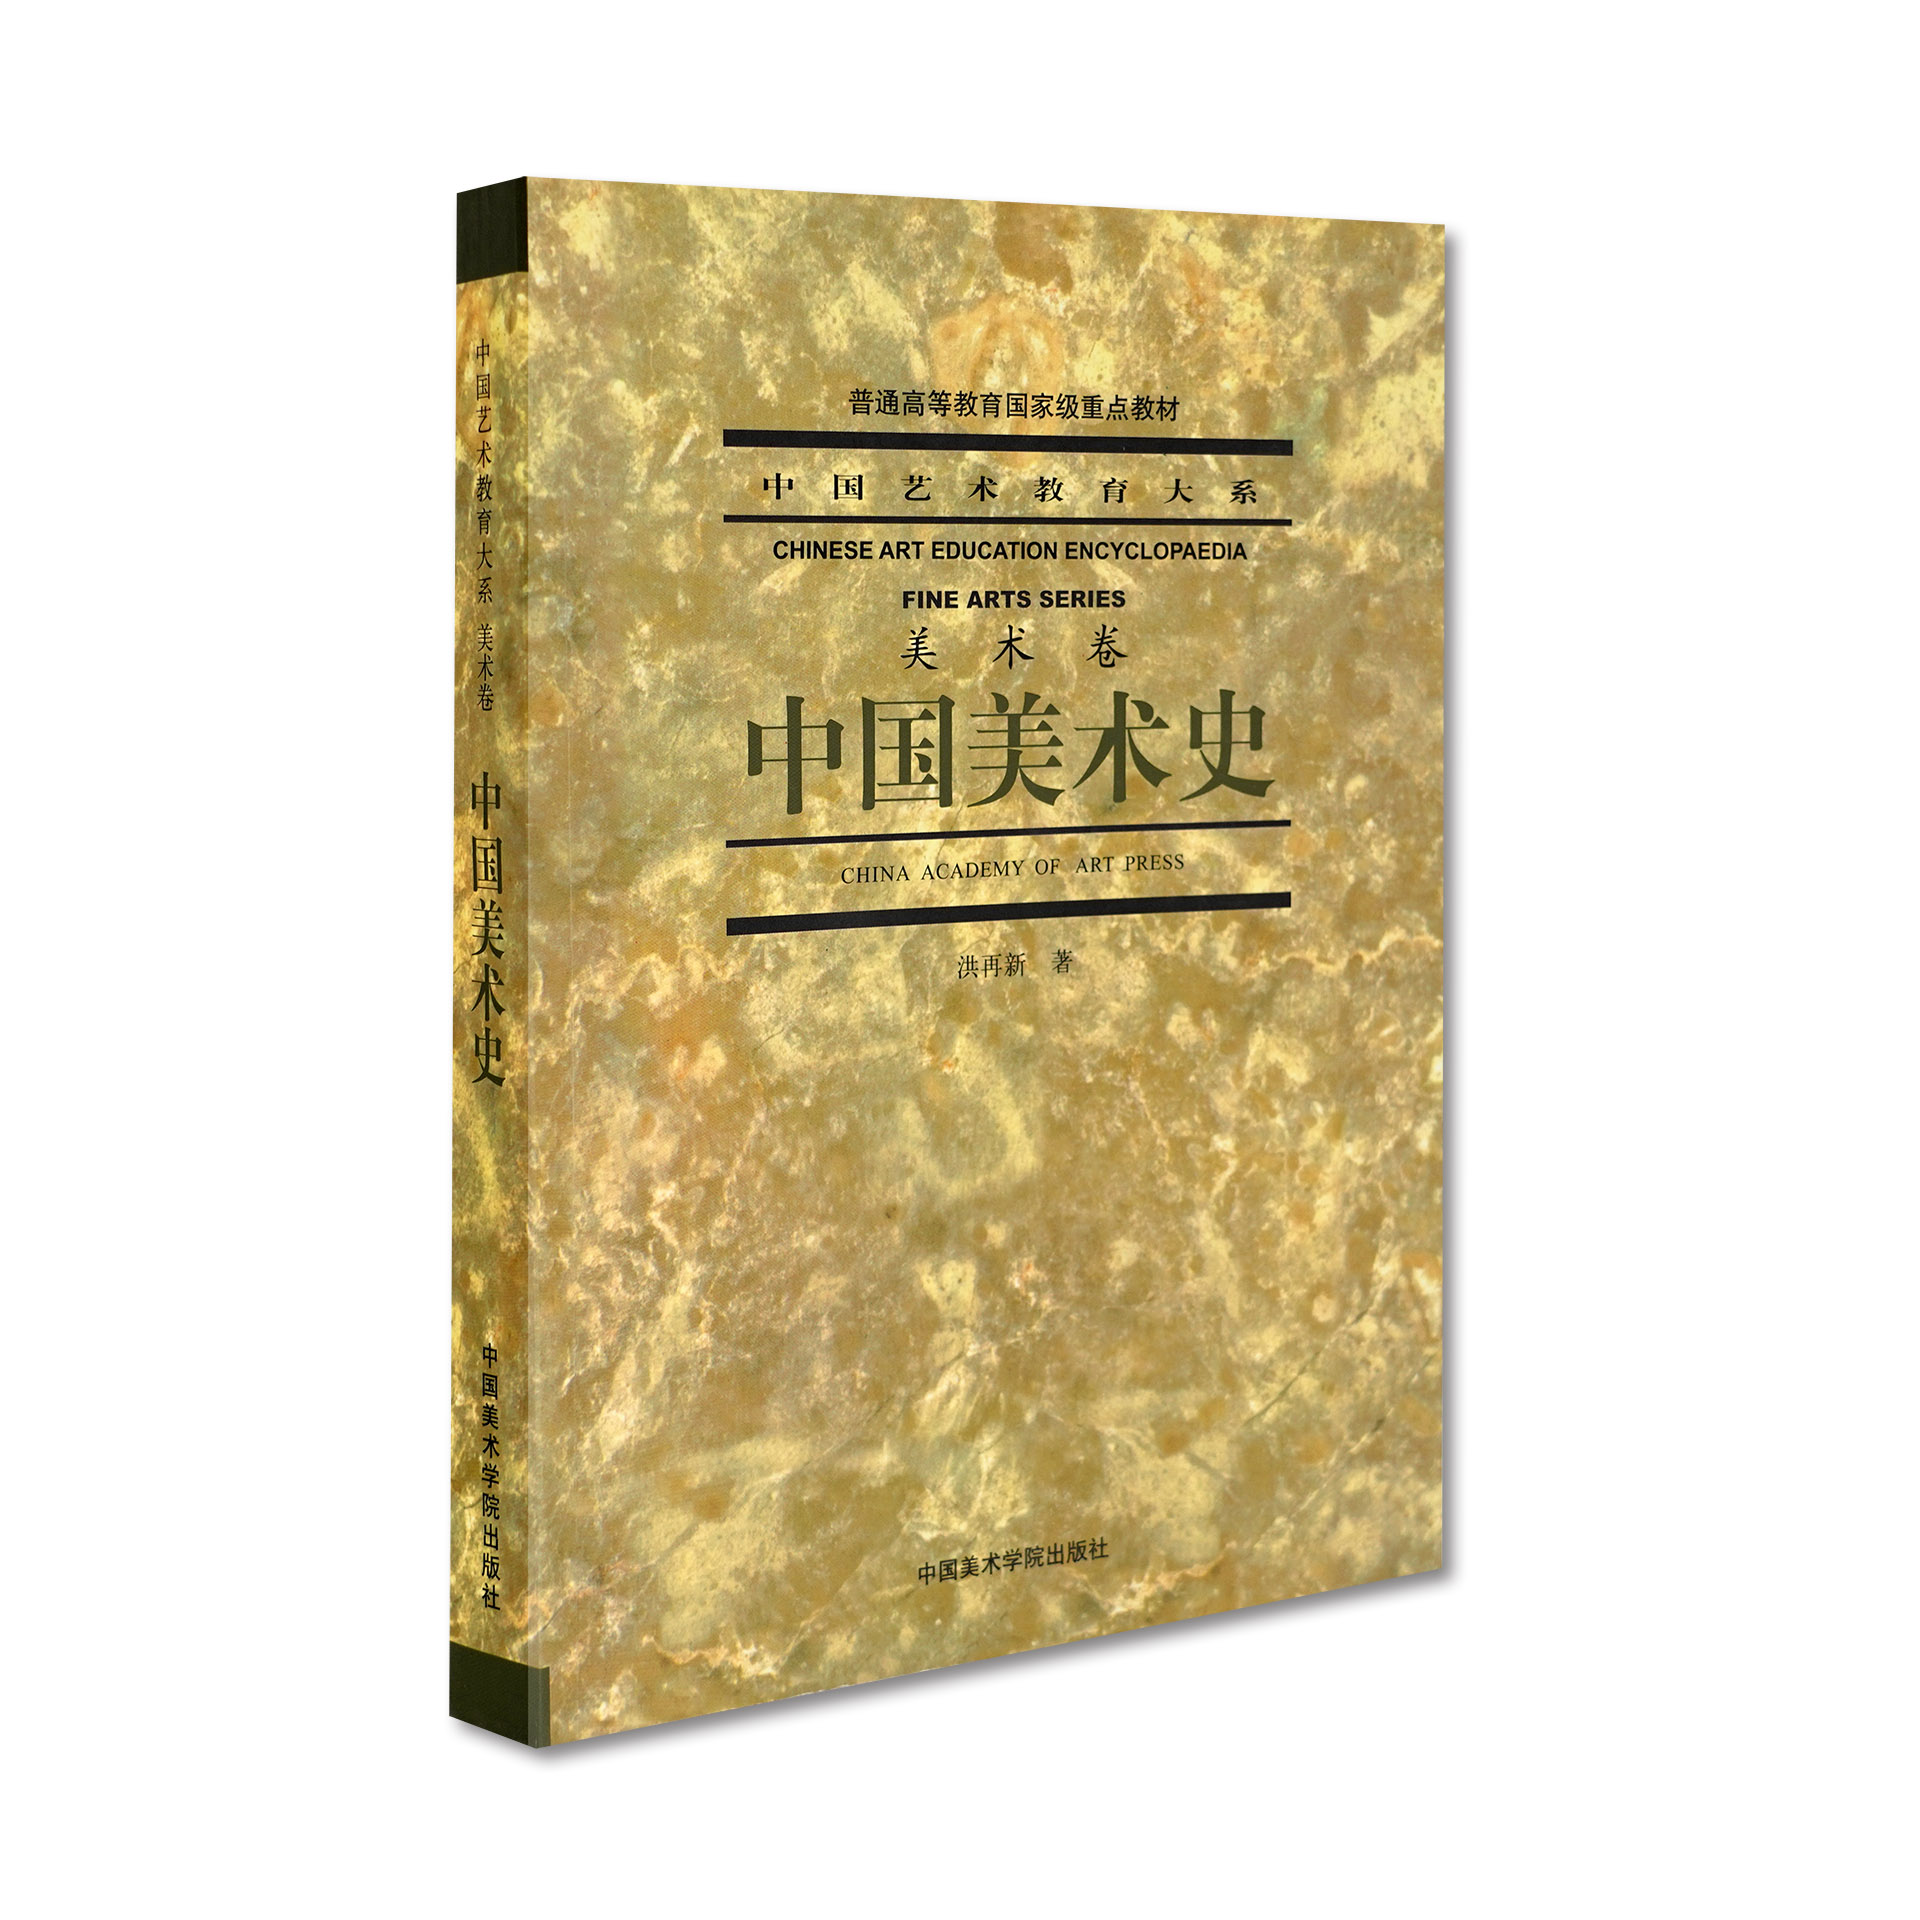 《中国美术史》中国艺术教育大系美术卷中国美术学院-封面